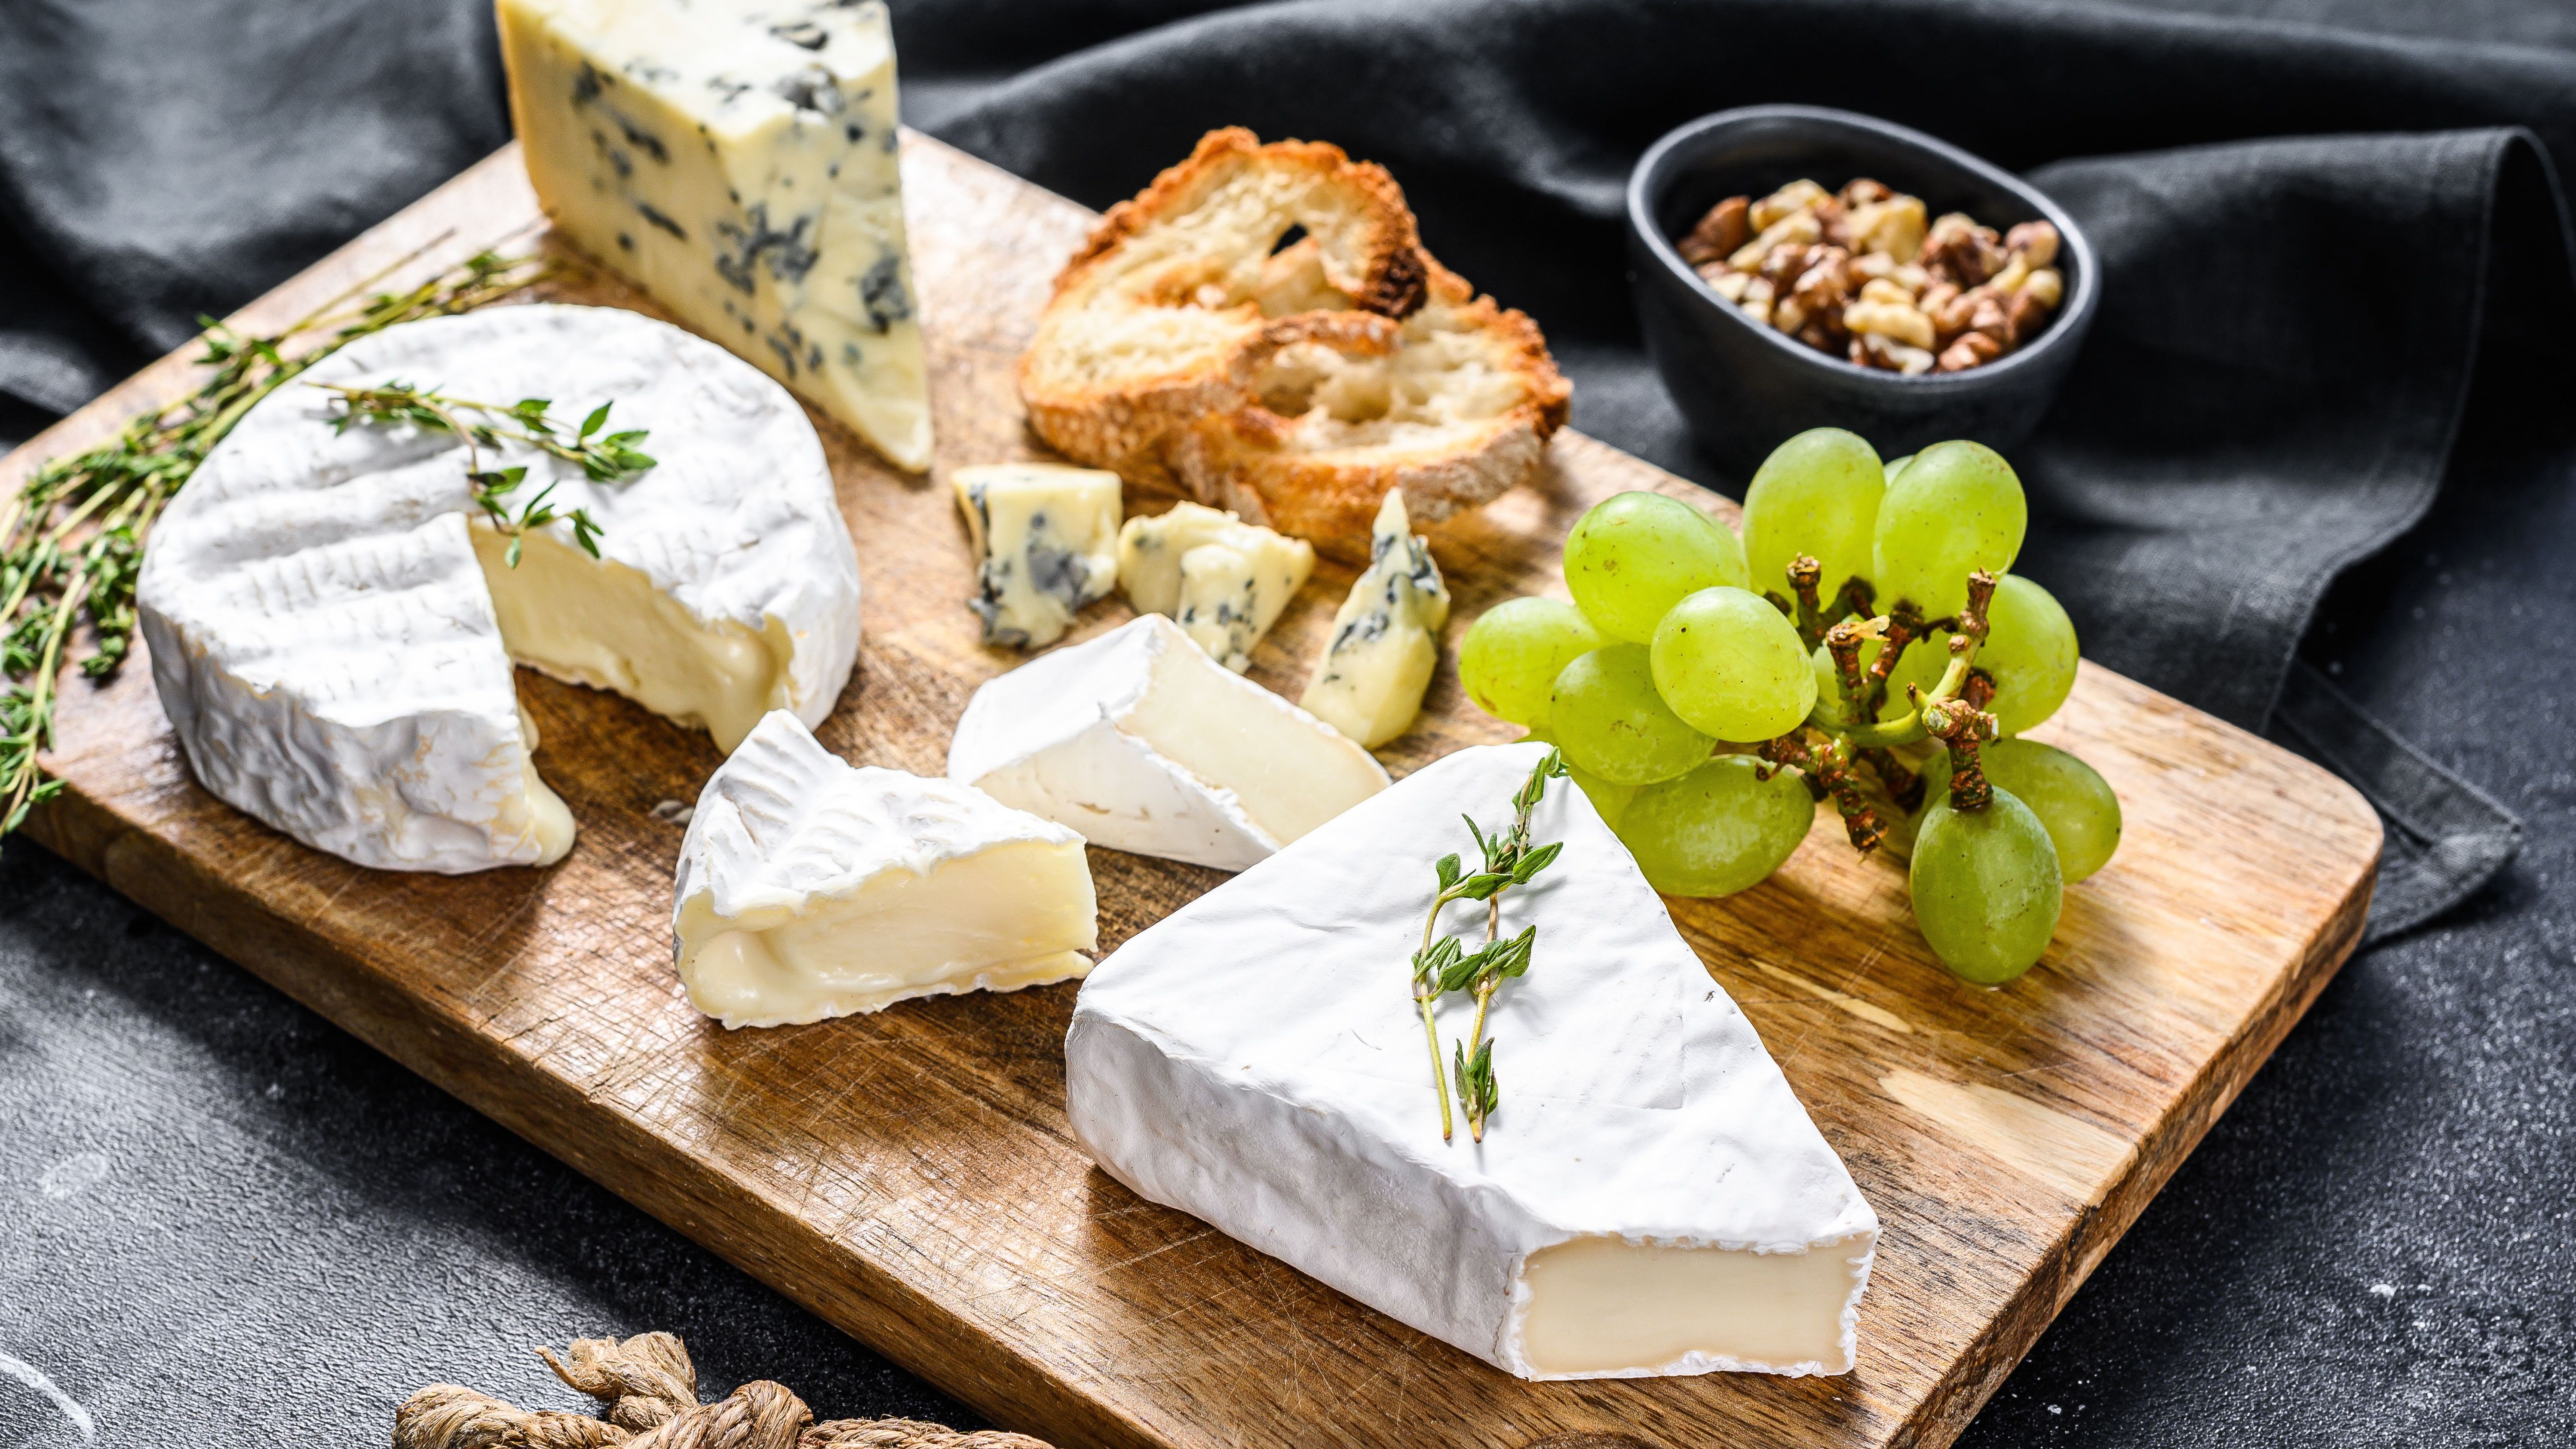 Plateau de fromages amélioré - 6, 8, 10 personnes - Au Comté Bon